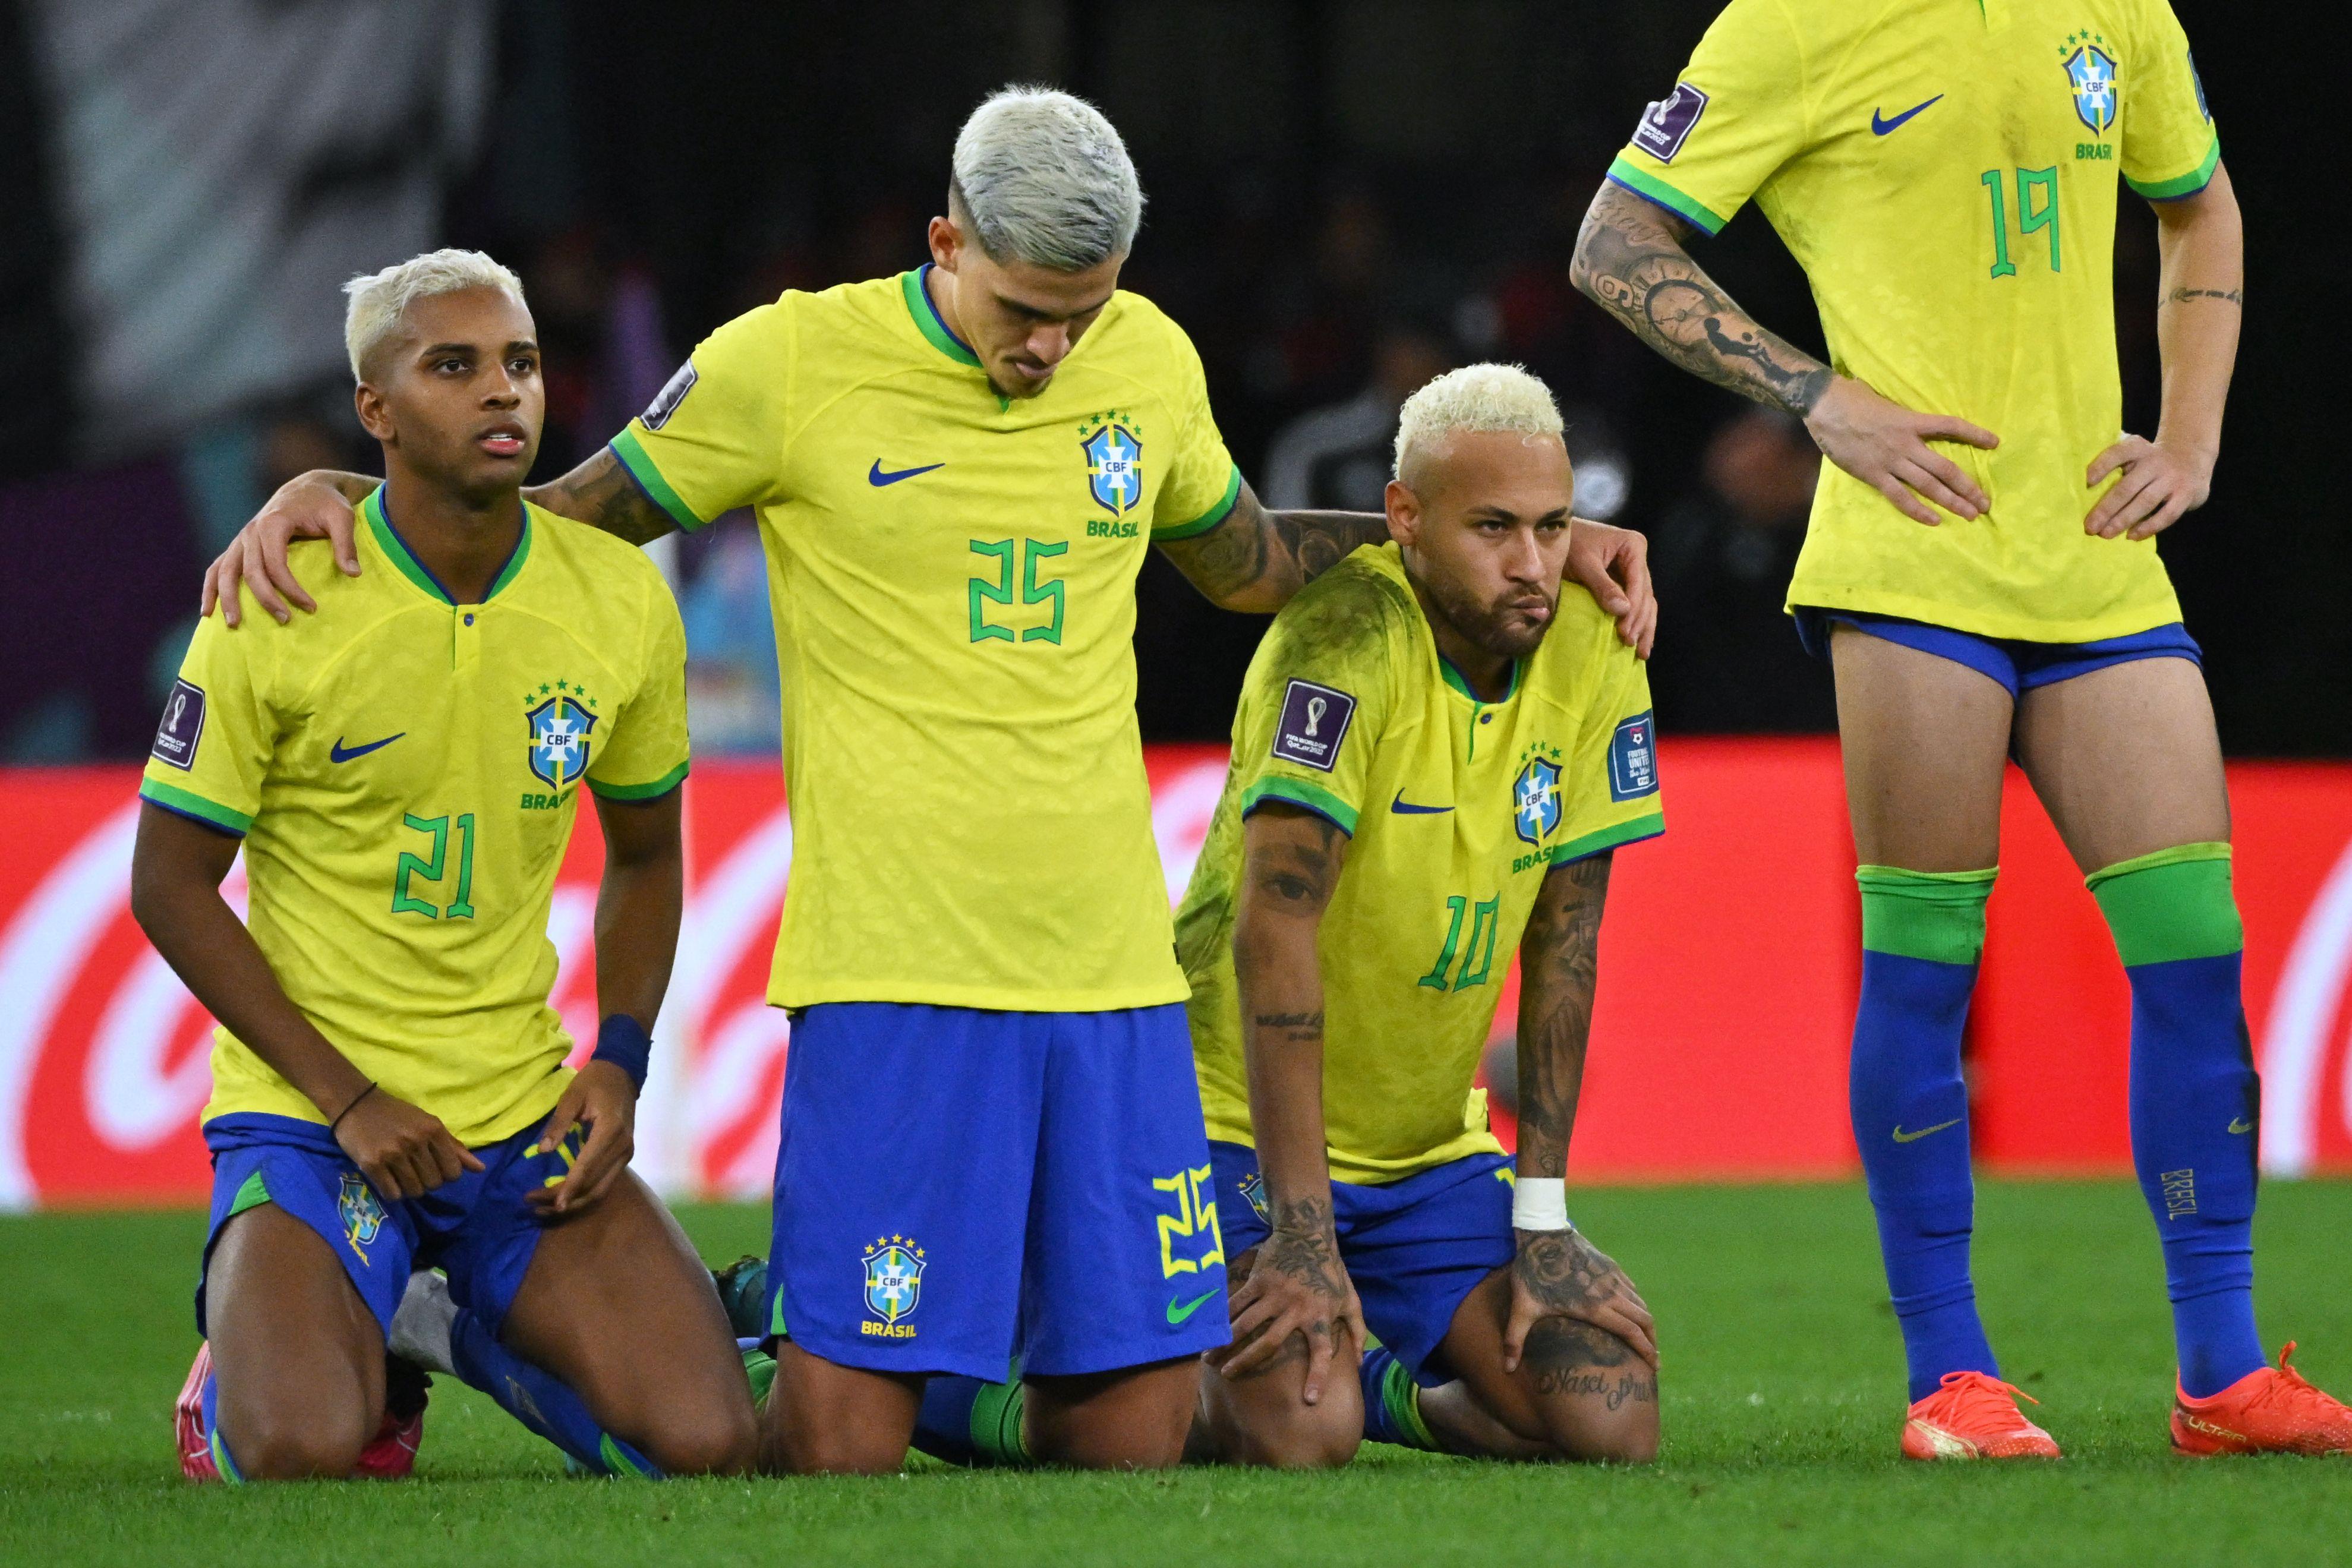 Qual é o histórico do Brasil em disputa de pênaltis na Copa do Mundo